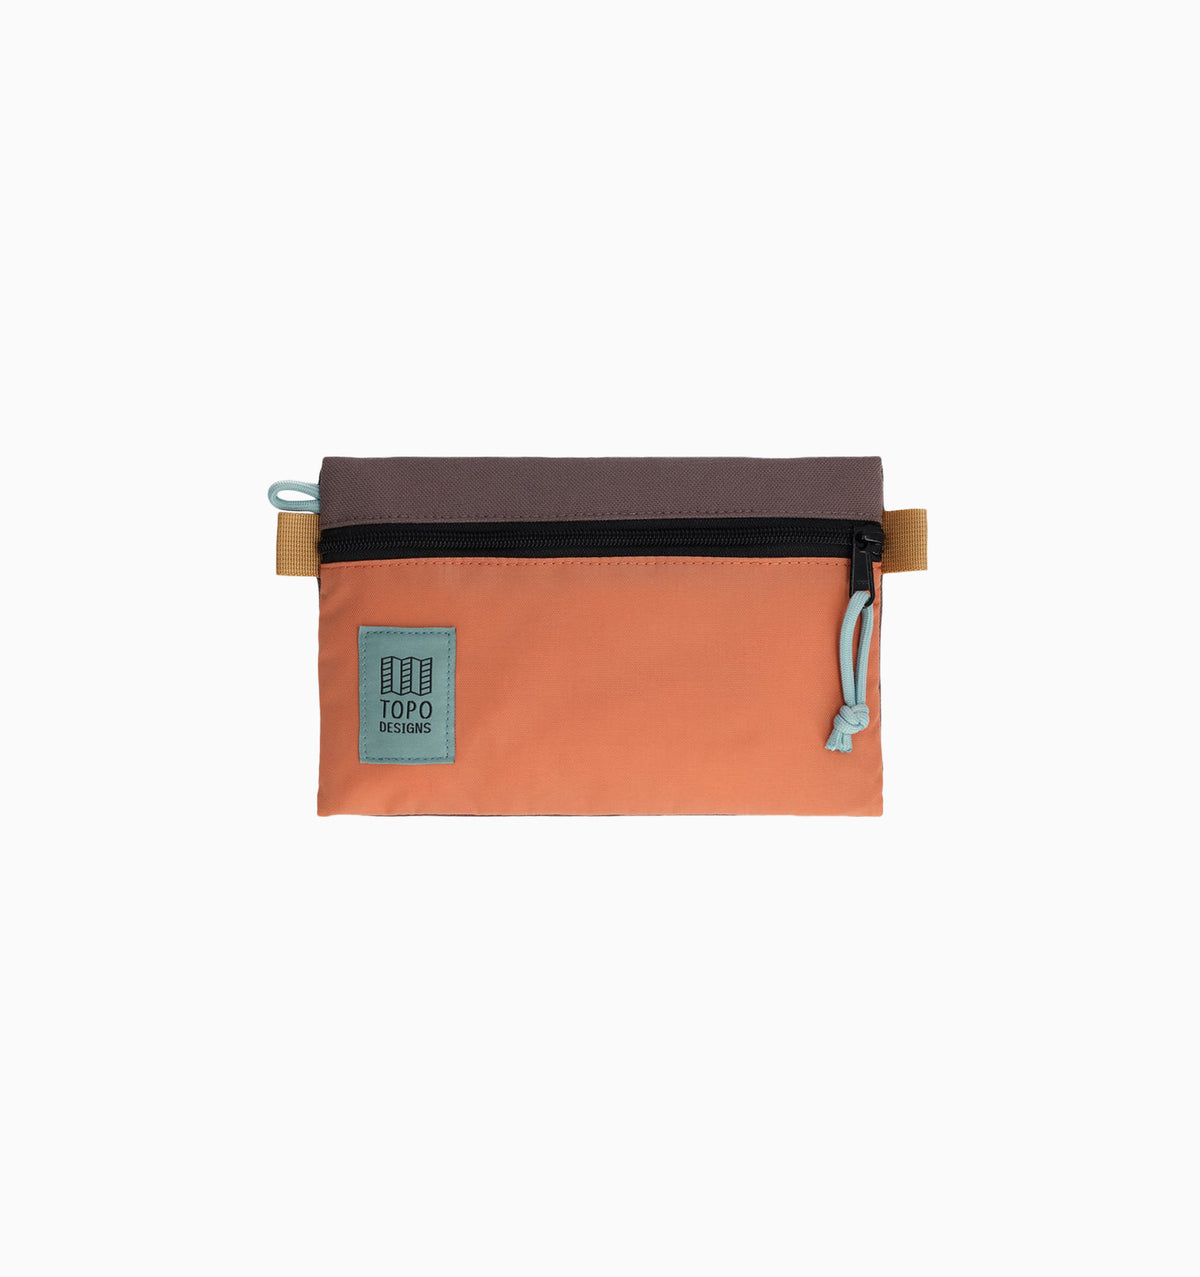 Topo Designs Small Accessory Bag - Coral/Peppercorn